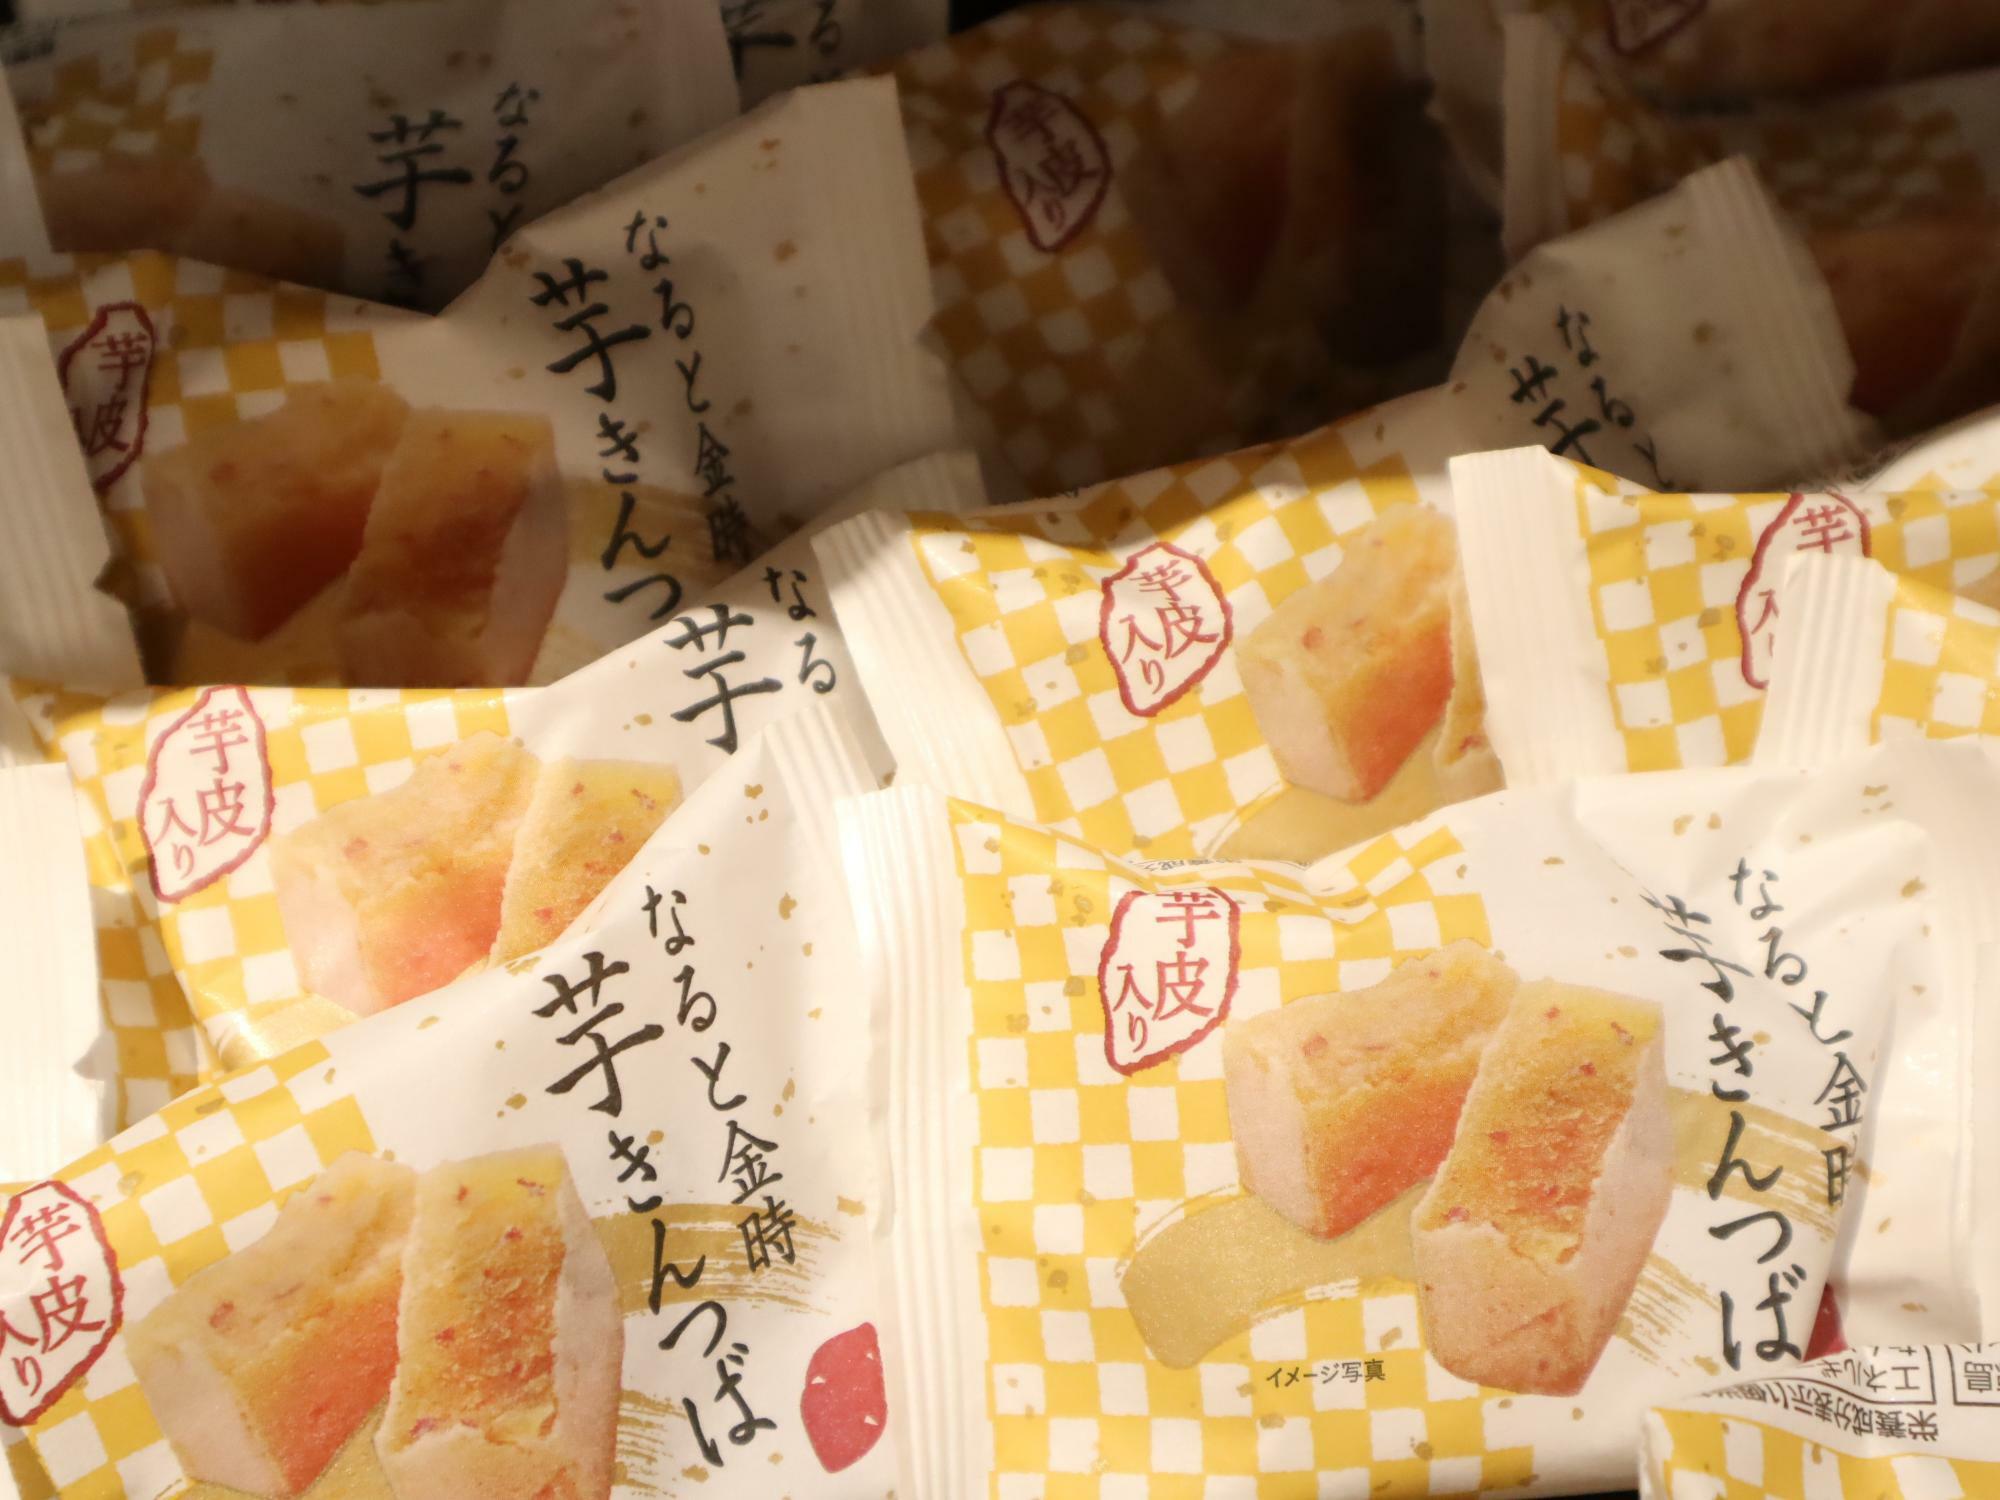 徳島駅クレメントプラザ地下1F「あとりえ市」で購入可能な「芋きんつば」。